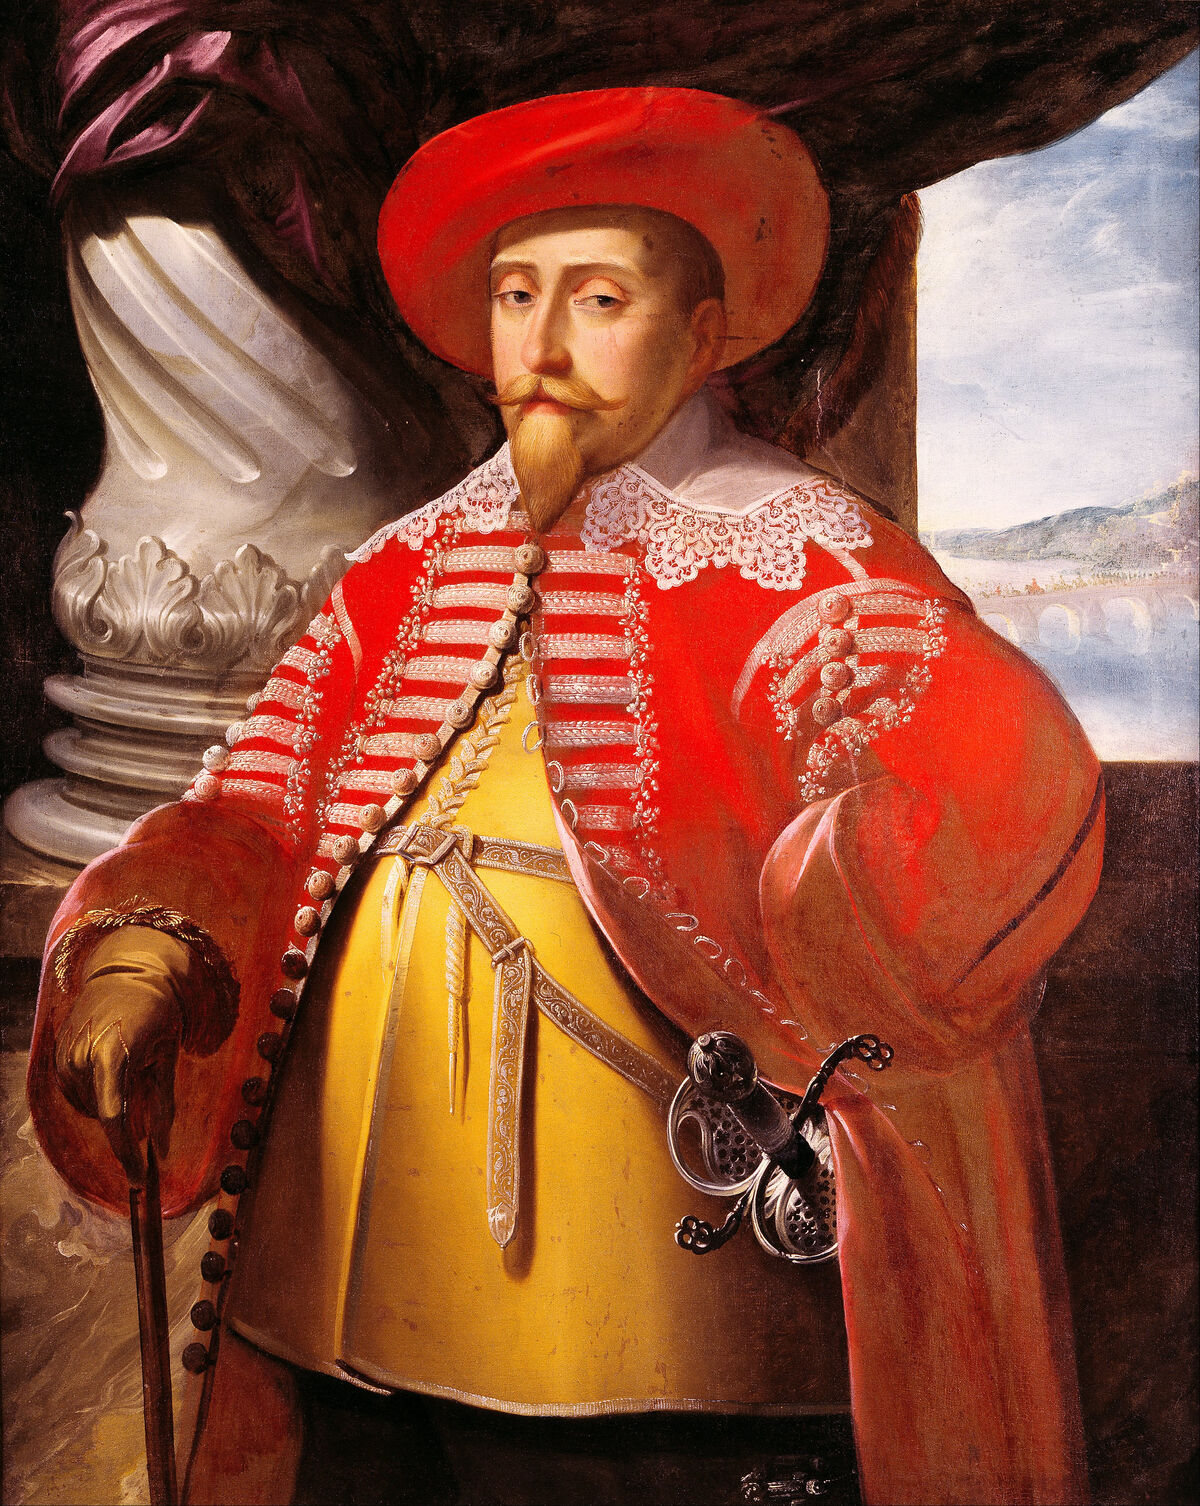 GFD 1/73: Gustavus Adolphus von Schweden (Gemälde von Matthäus Merian dem Älteren, um 1631)